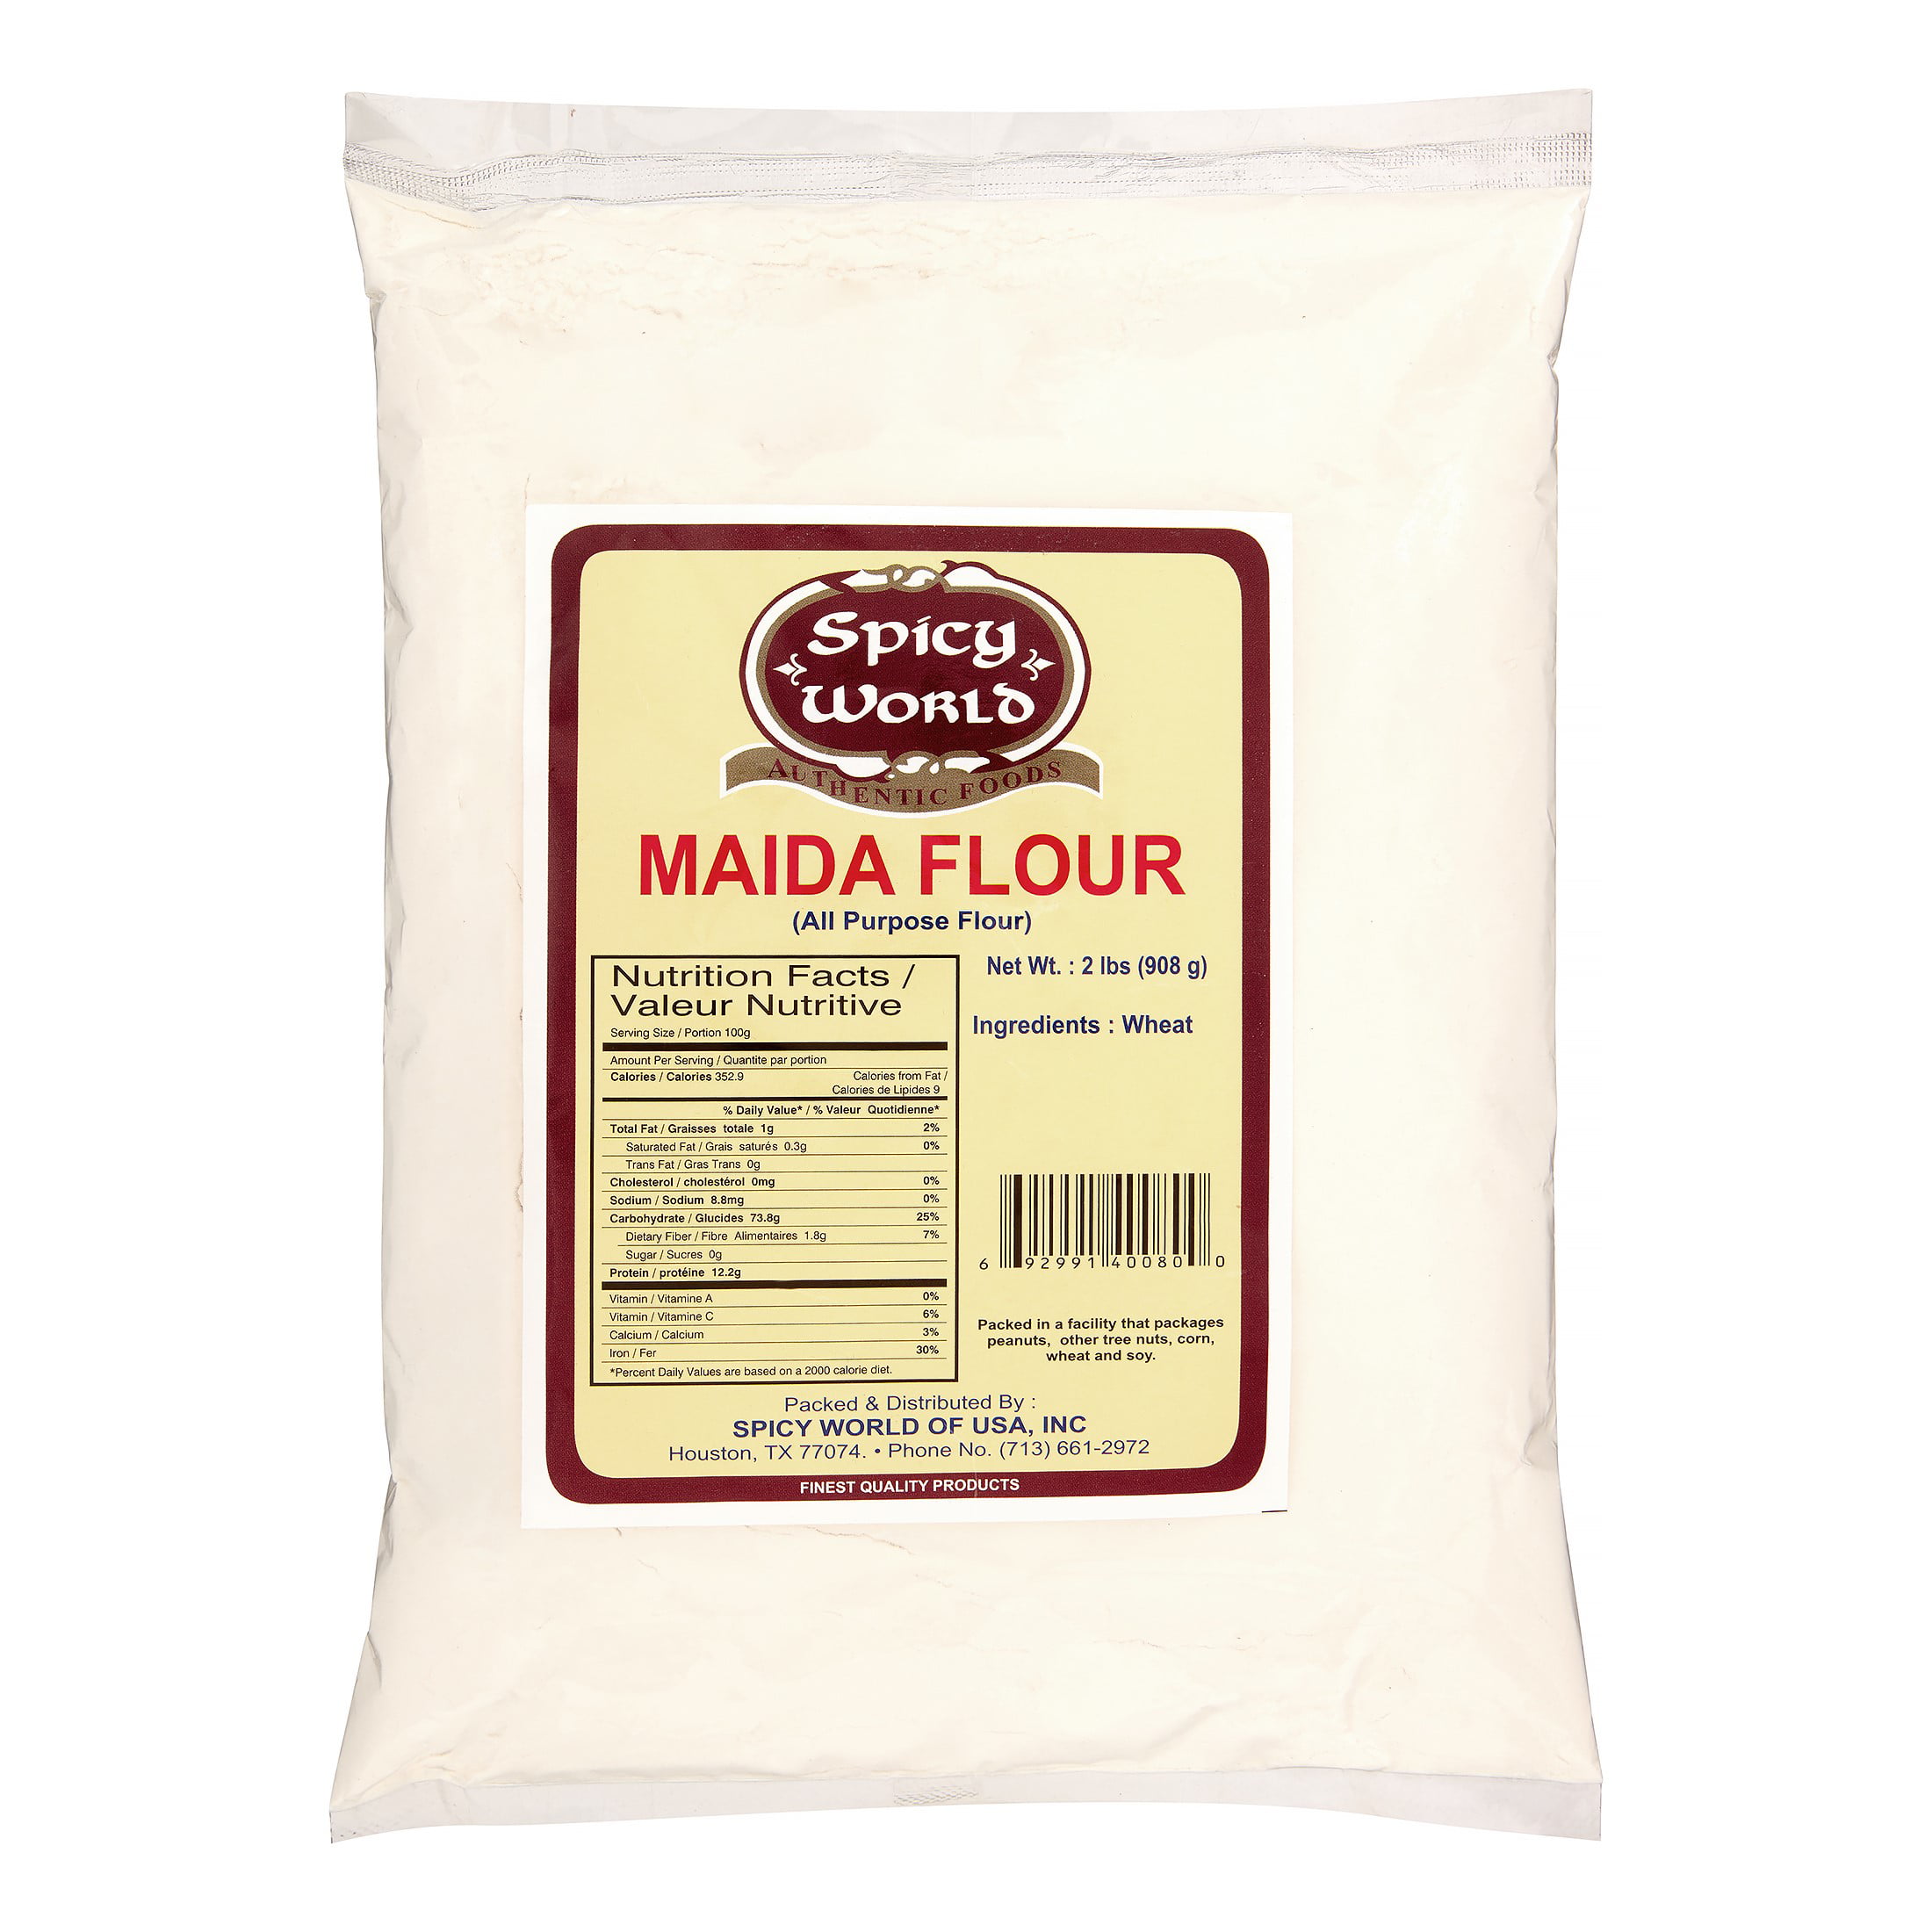 Spicy World Maida All Purpose Flour, 2 Lb - Walmart.com - Walmart.com